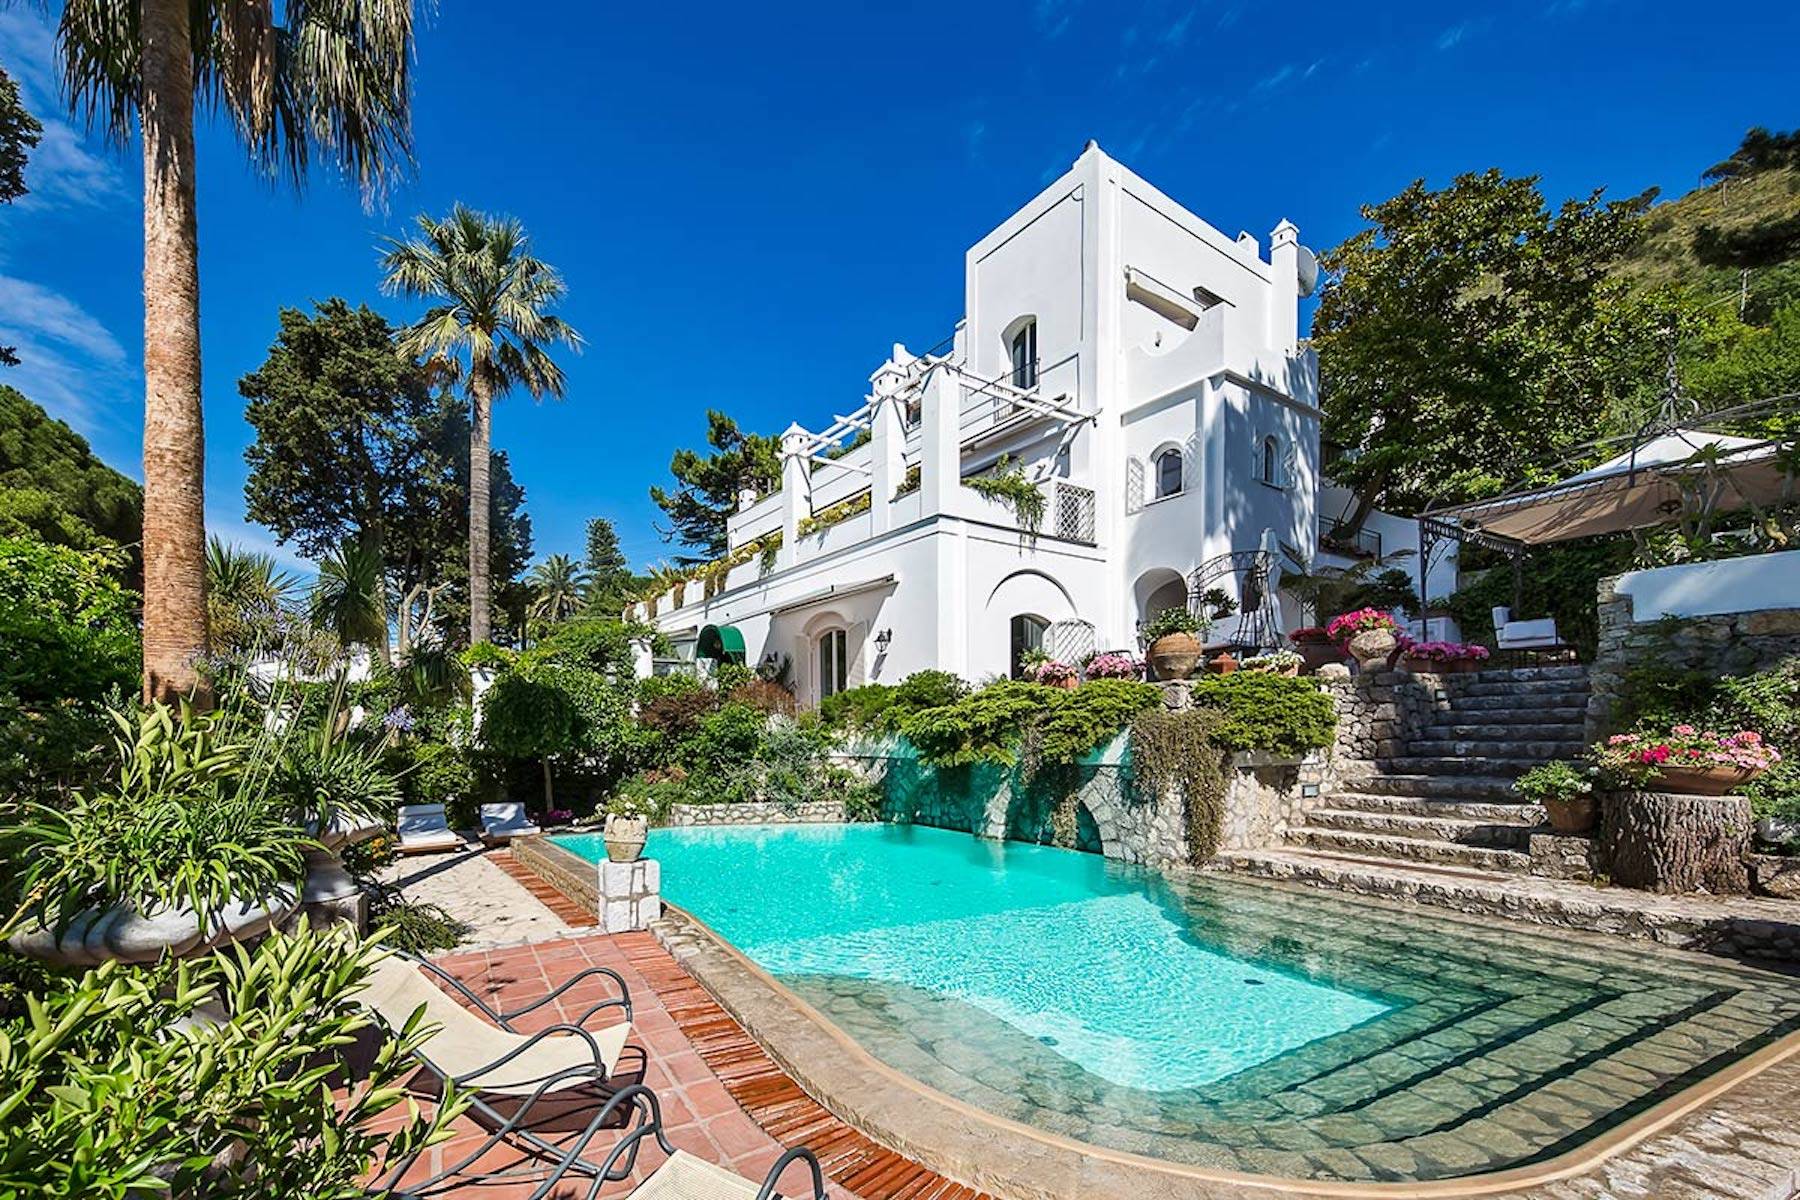 Villa in Vendita a Capri: 5 locali, 790 mq - Foto 3